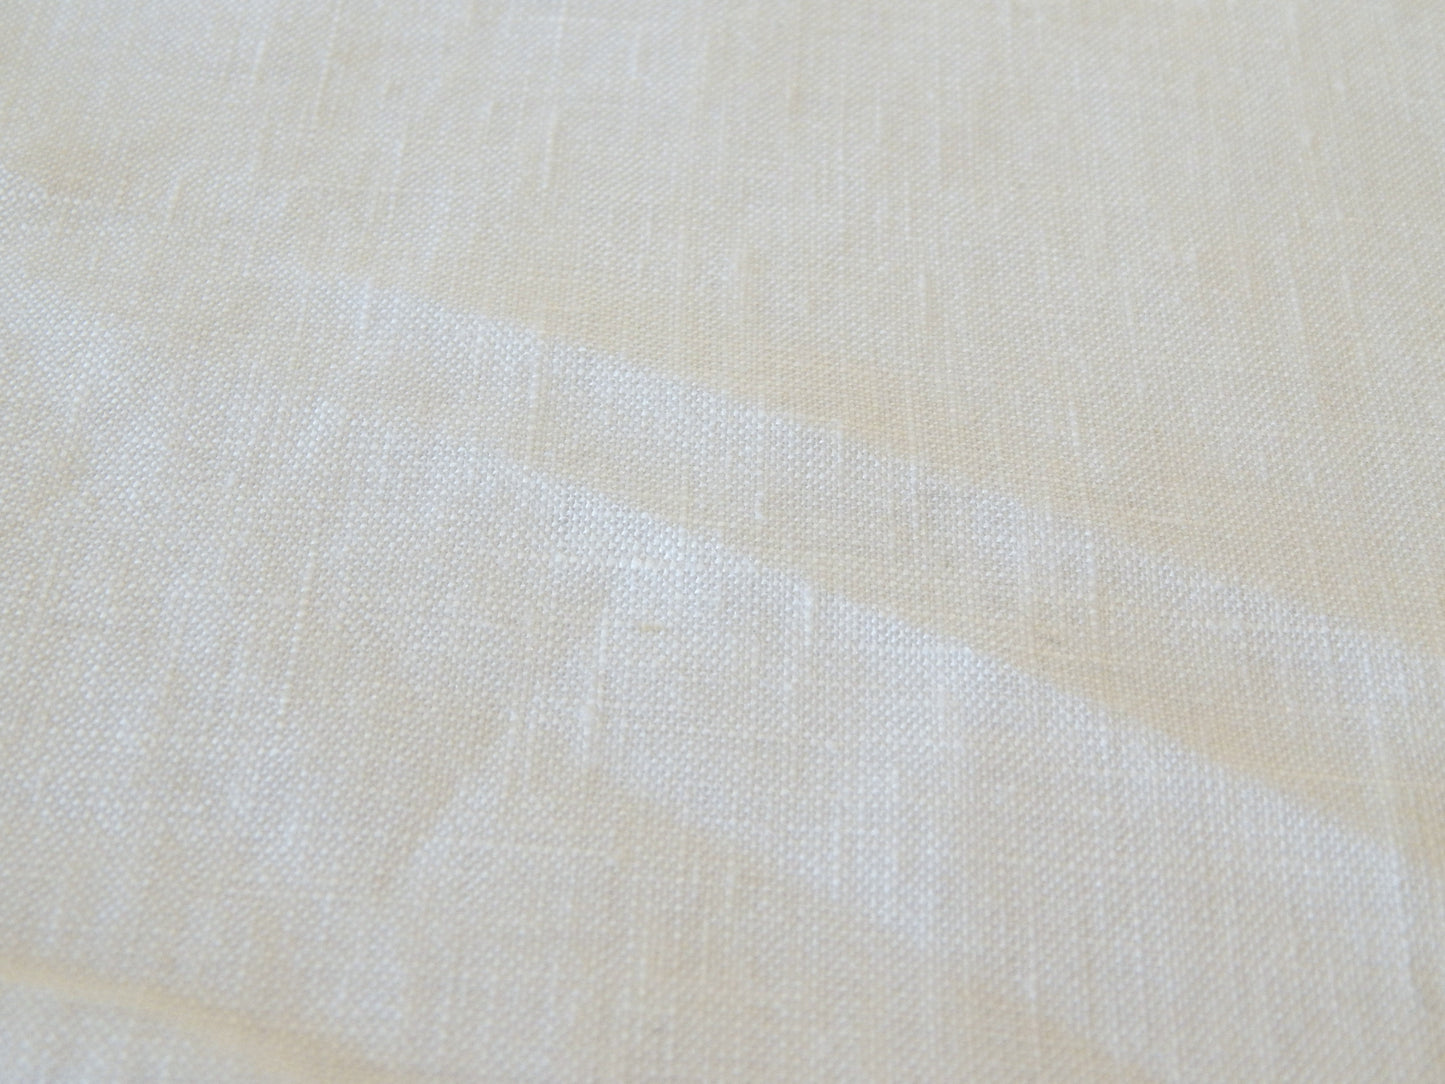 White Linen